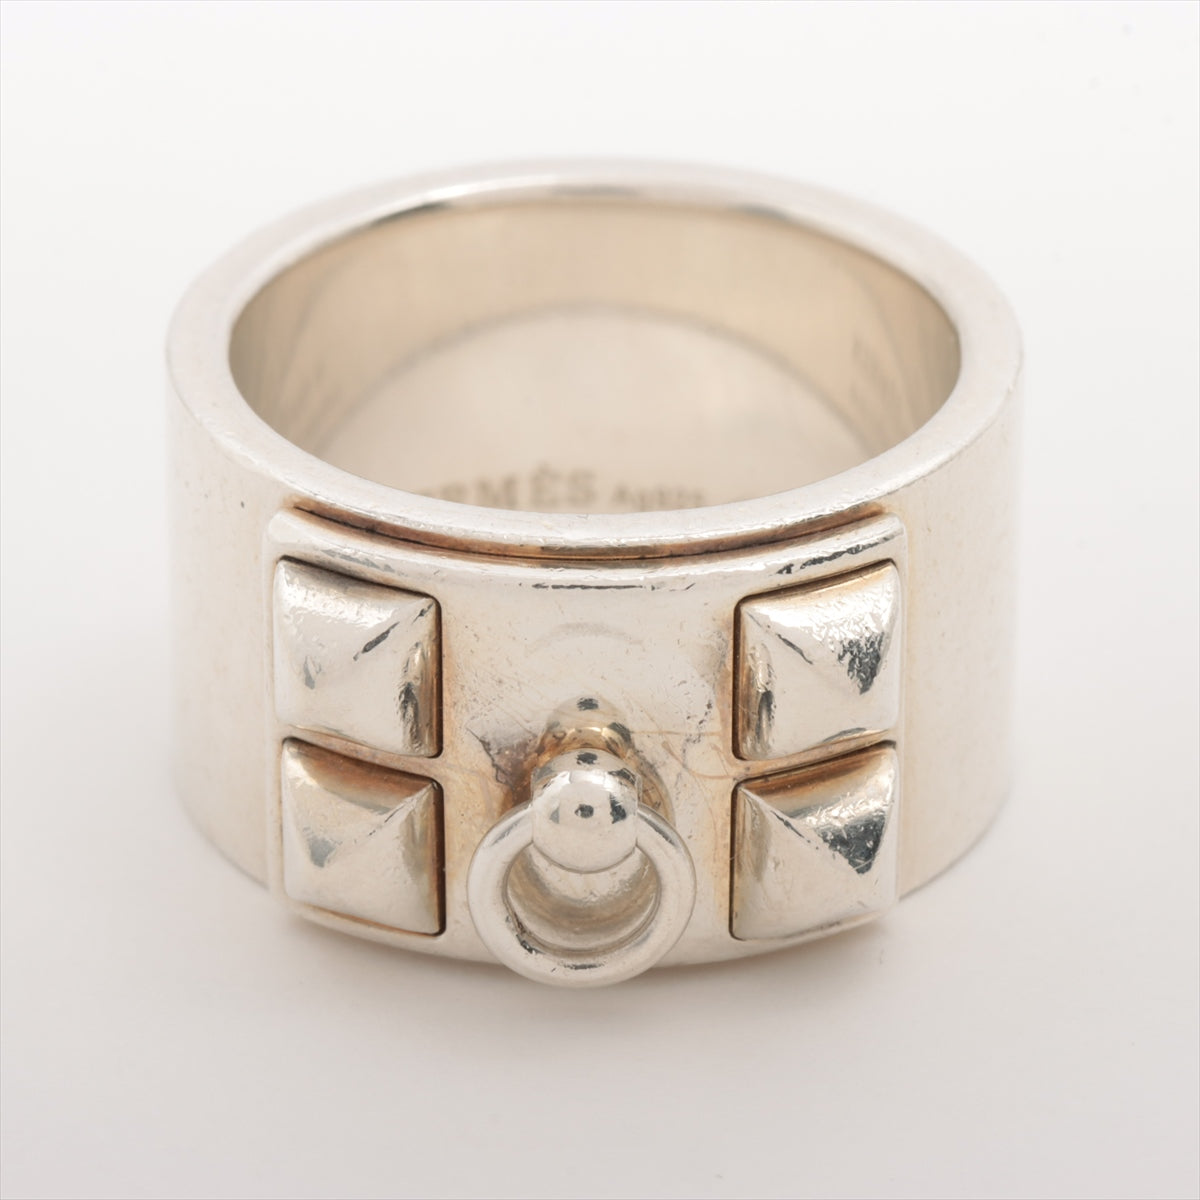 Hermès Collier de Chien rings 56 925 17.6g Silver